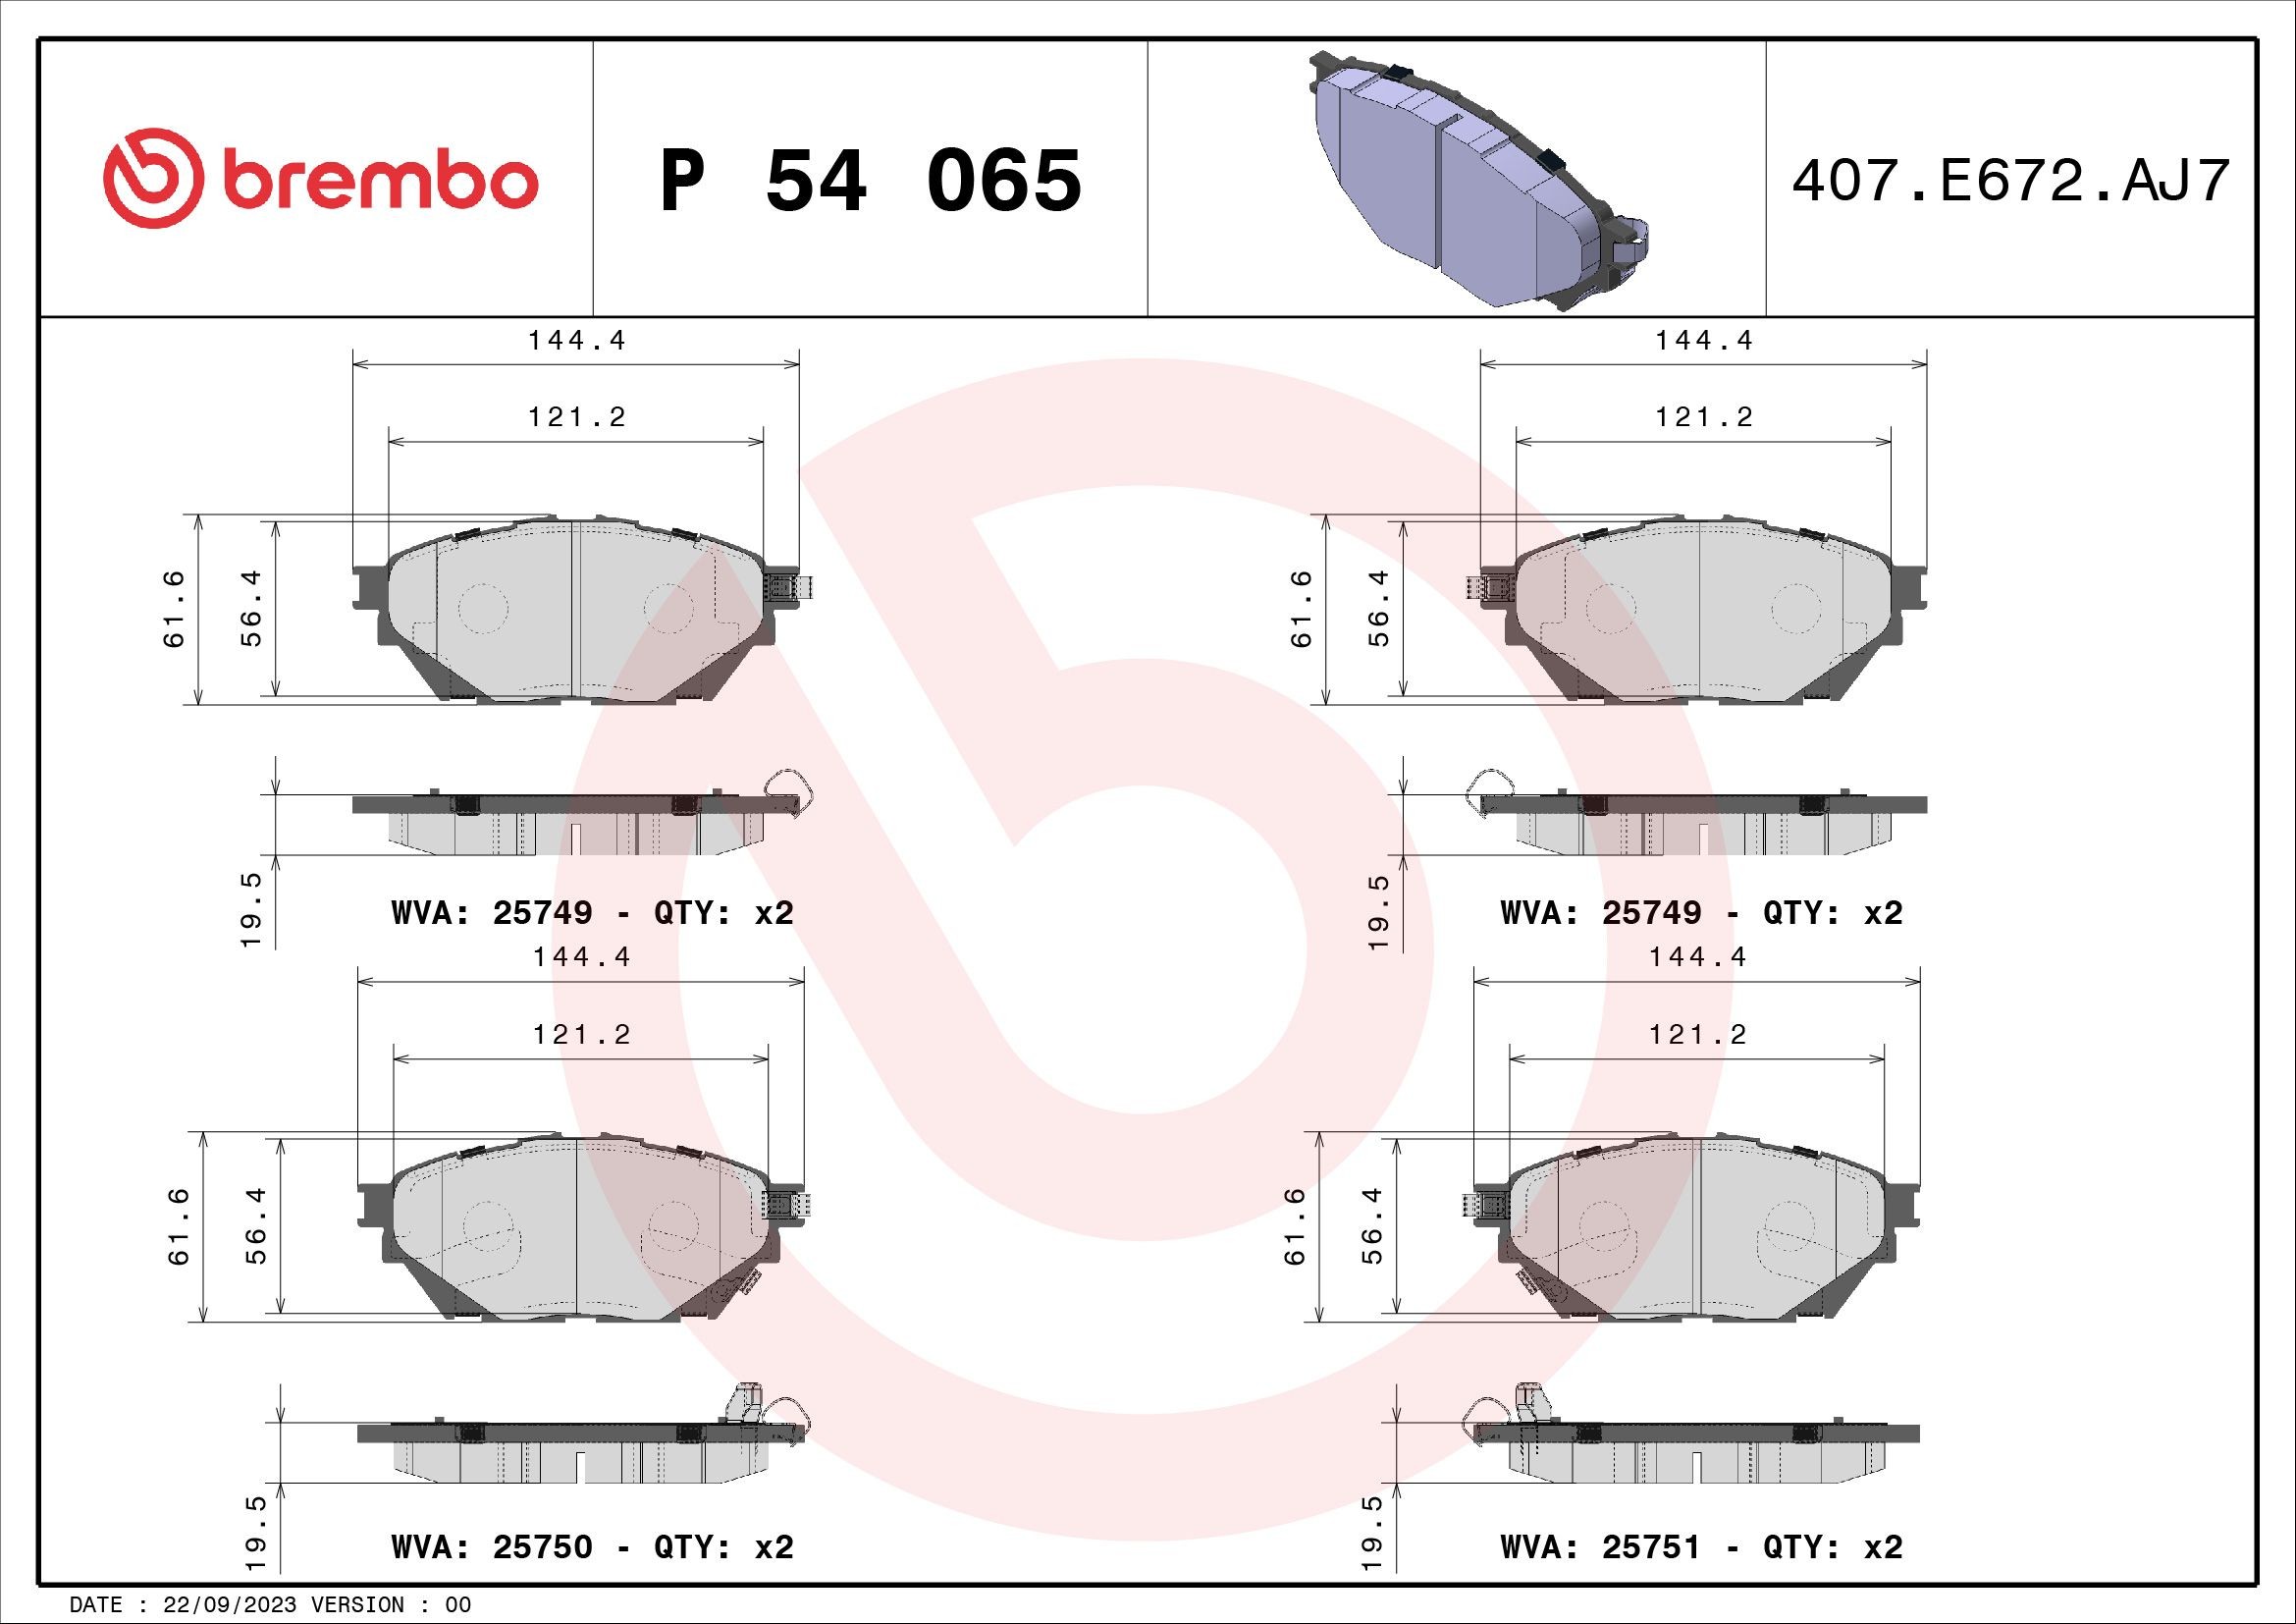 BREMBO P 54 065 Bremsbeläge MITSUBISHI LKW kaufen